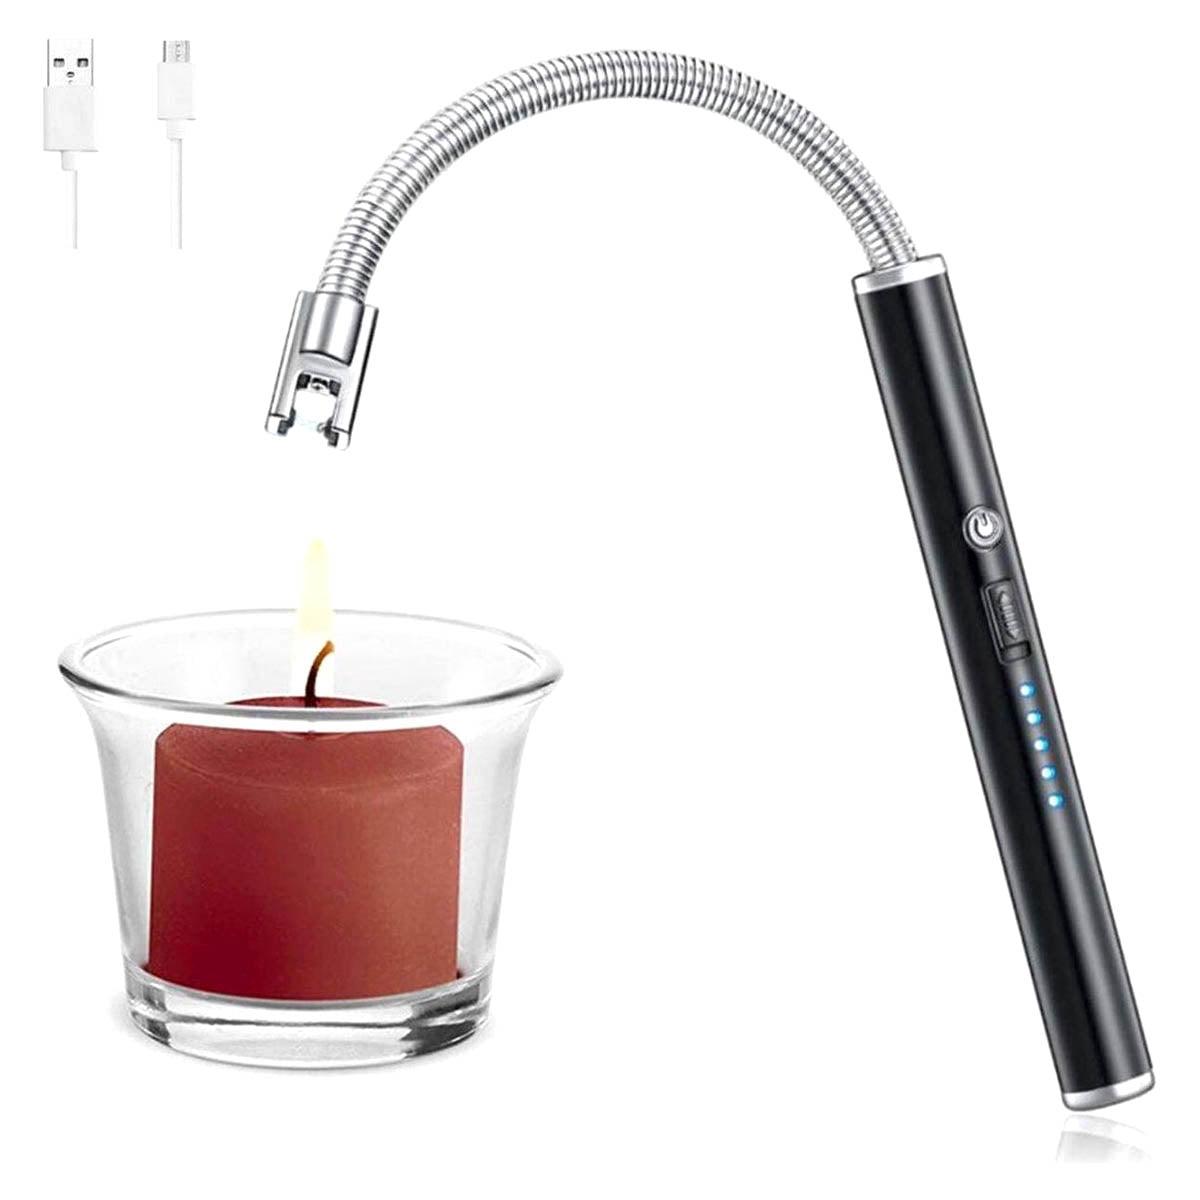 BBQ Aansteker oplaadbaar met usb kabel - Elektrische Keuken Aansteker - Flexibele Aansteker - Rood - Ariko